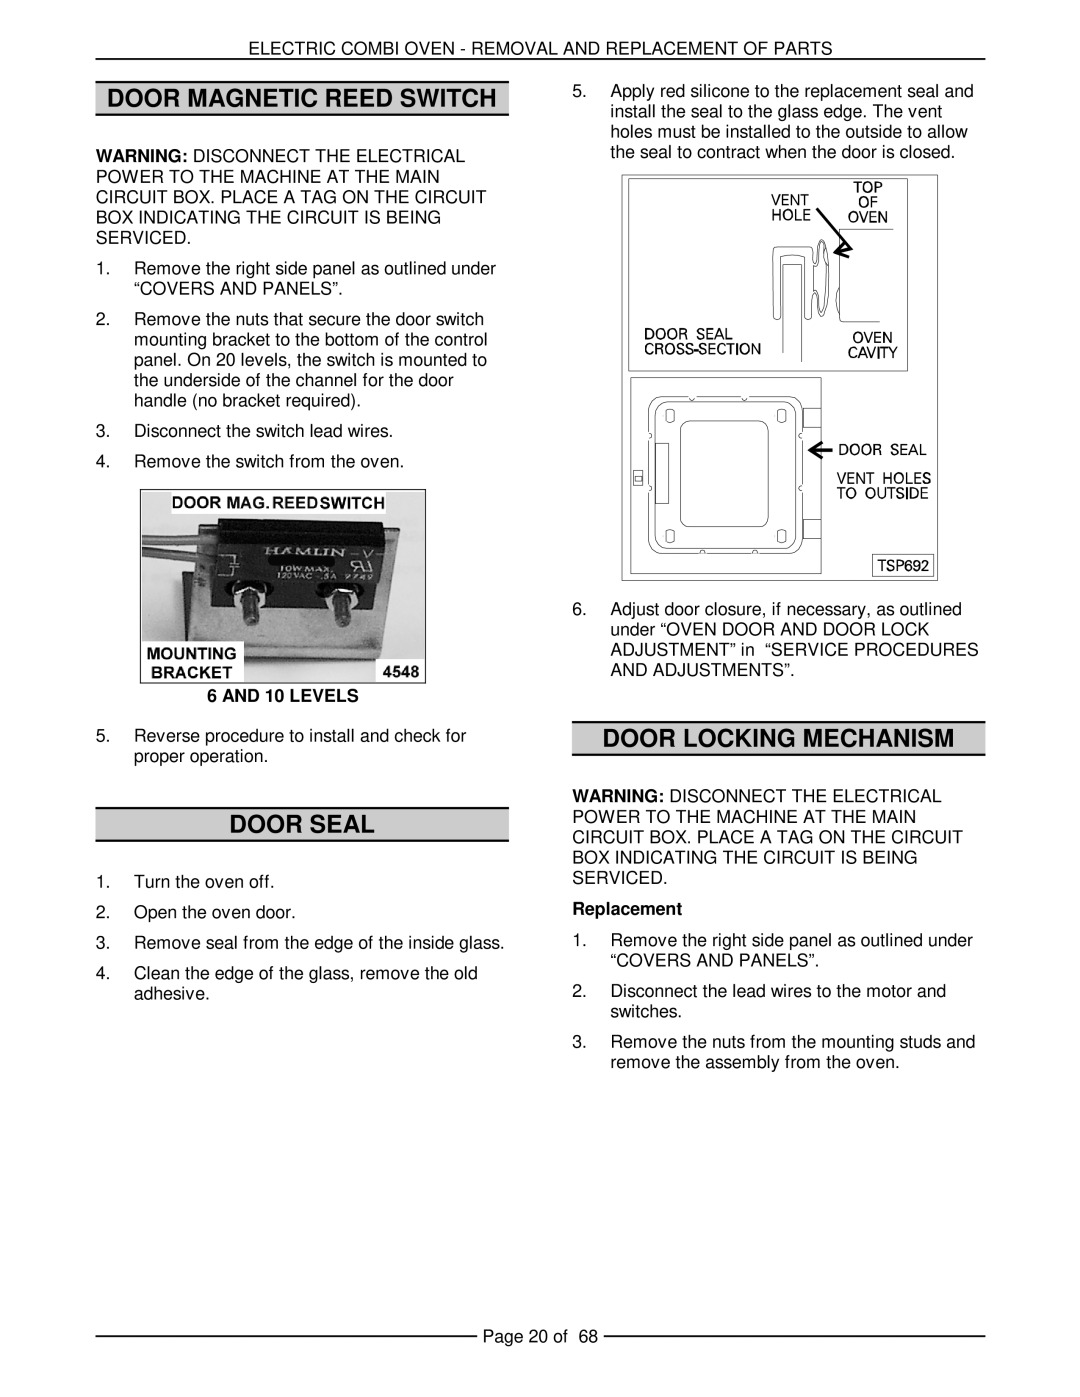 Vulcan-Hart VCE20H 126172 Door Magnetic Reed Switch, Door Seal, Door Locking Mechanism, AND 10 LEVELS, Replacement 